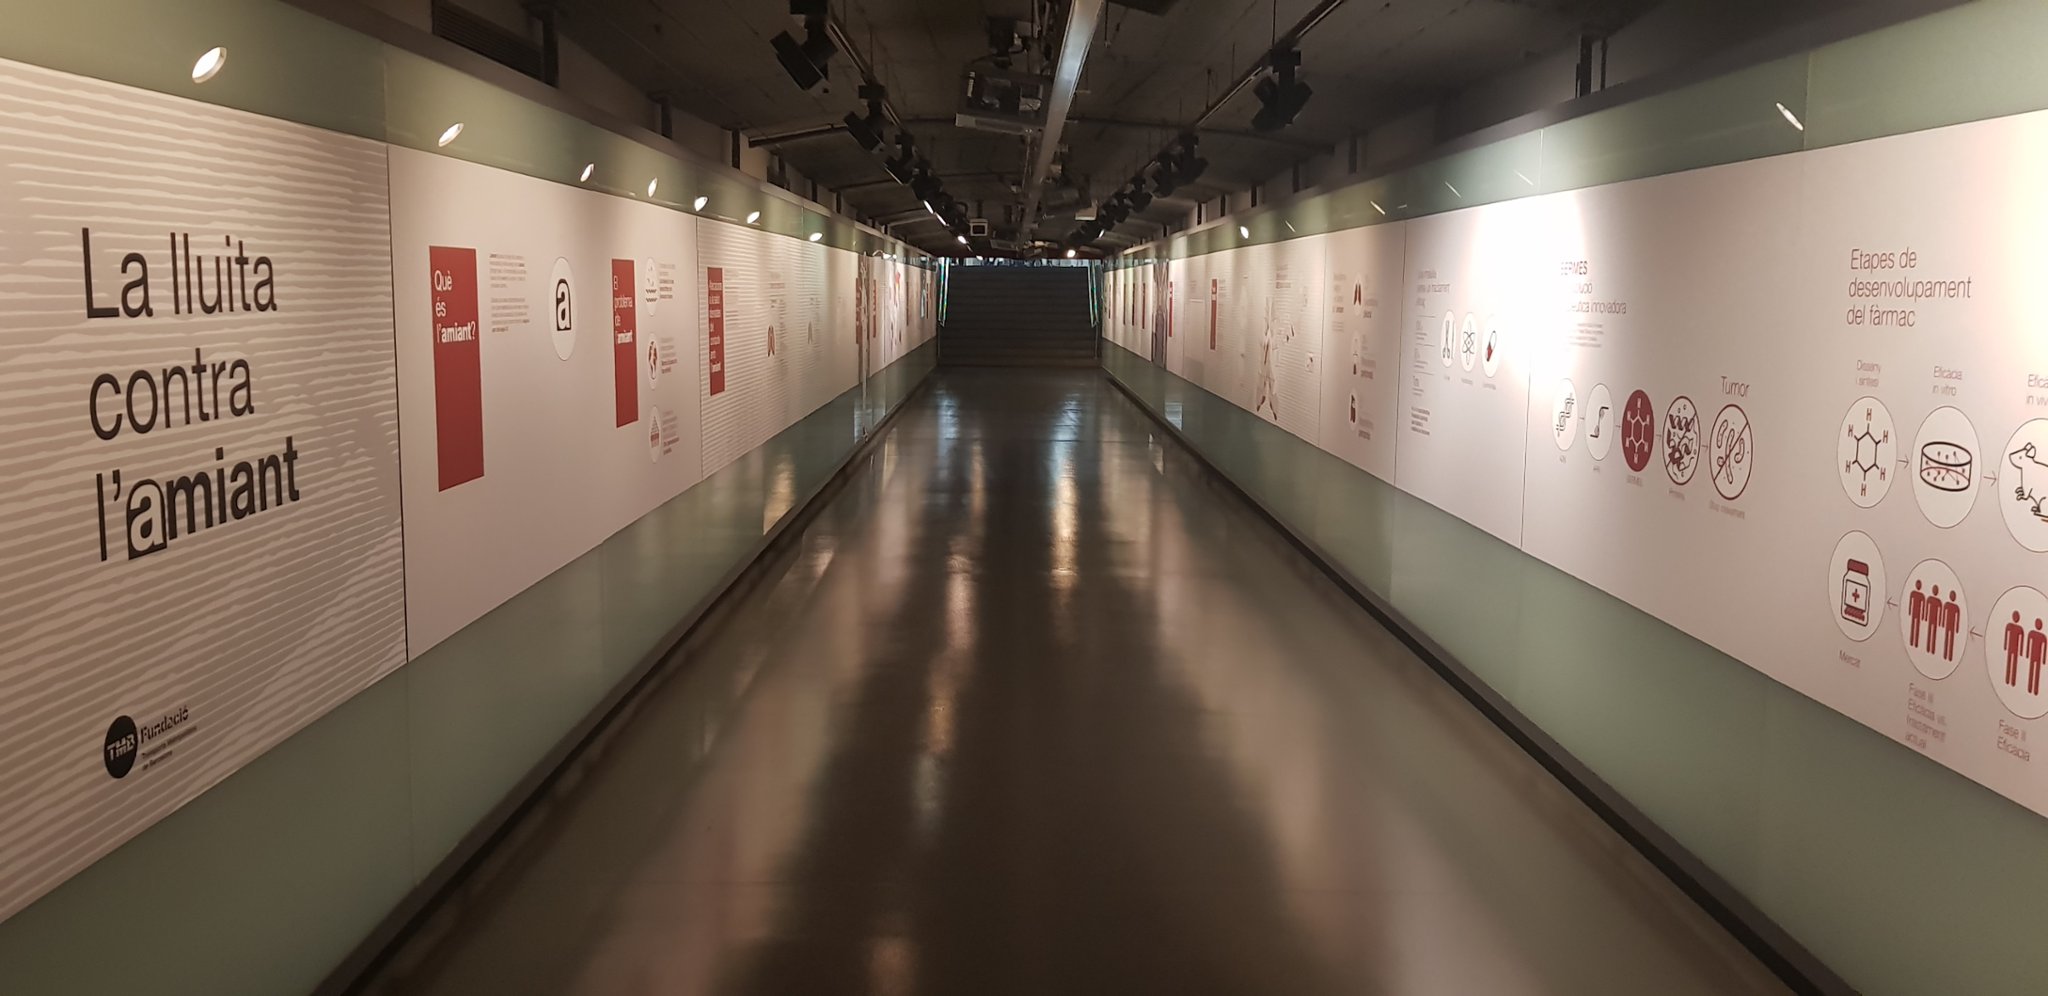  Aromics i el seu projecte Bermes en l'exposició que Metro de Barcelona organitza per mostrar els danys de l'amiant en la salut.